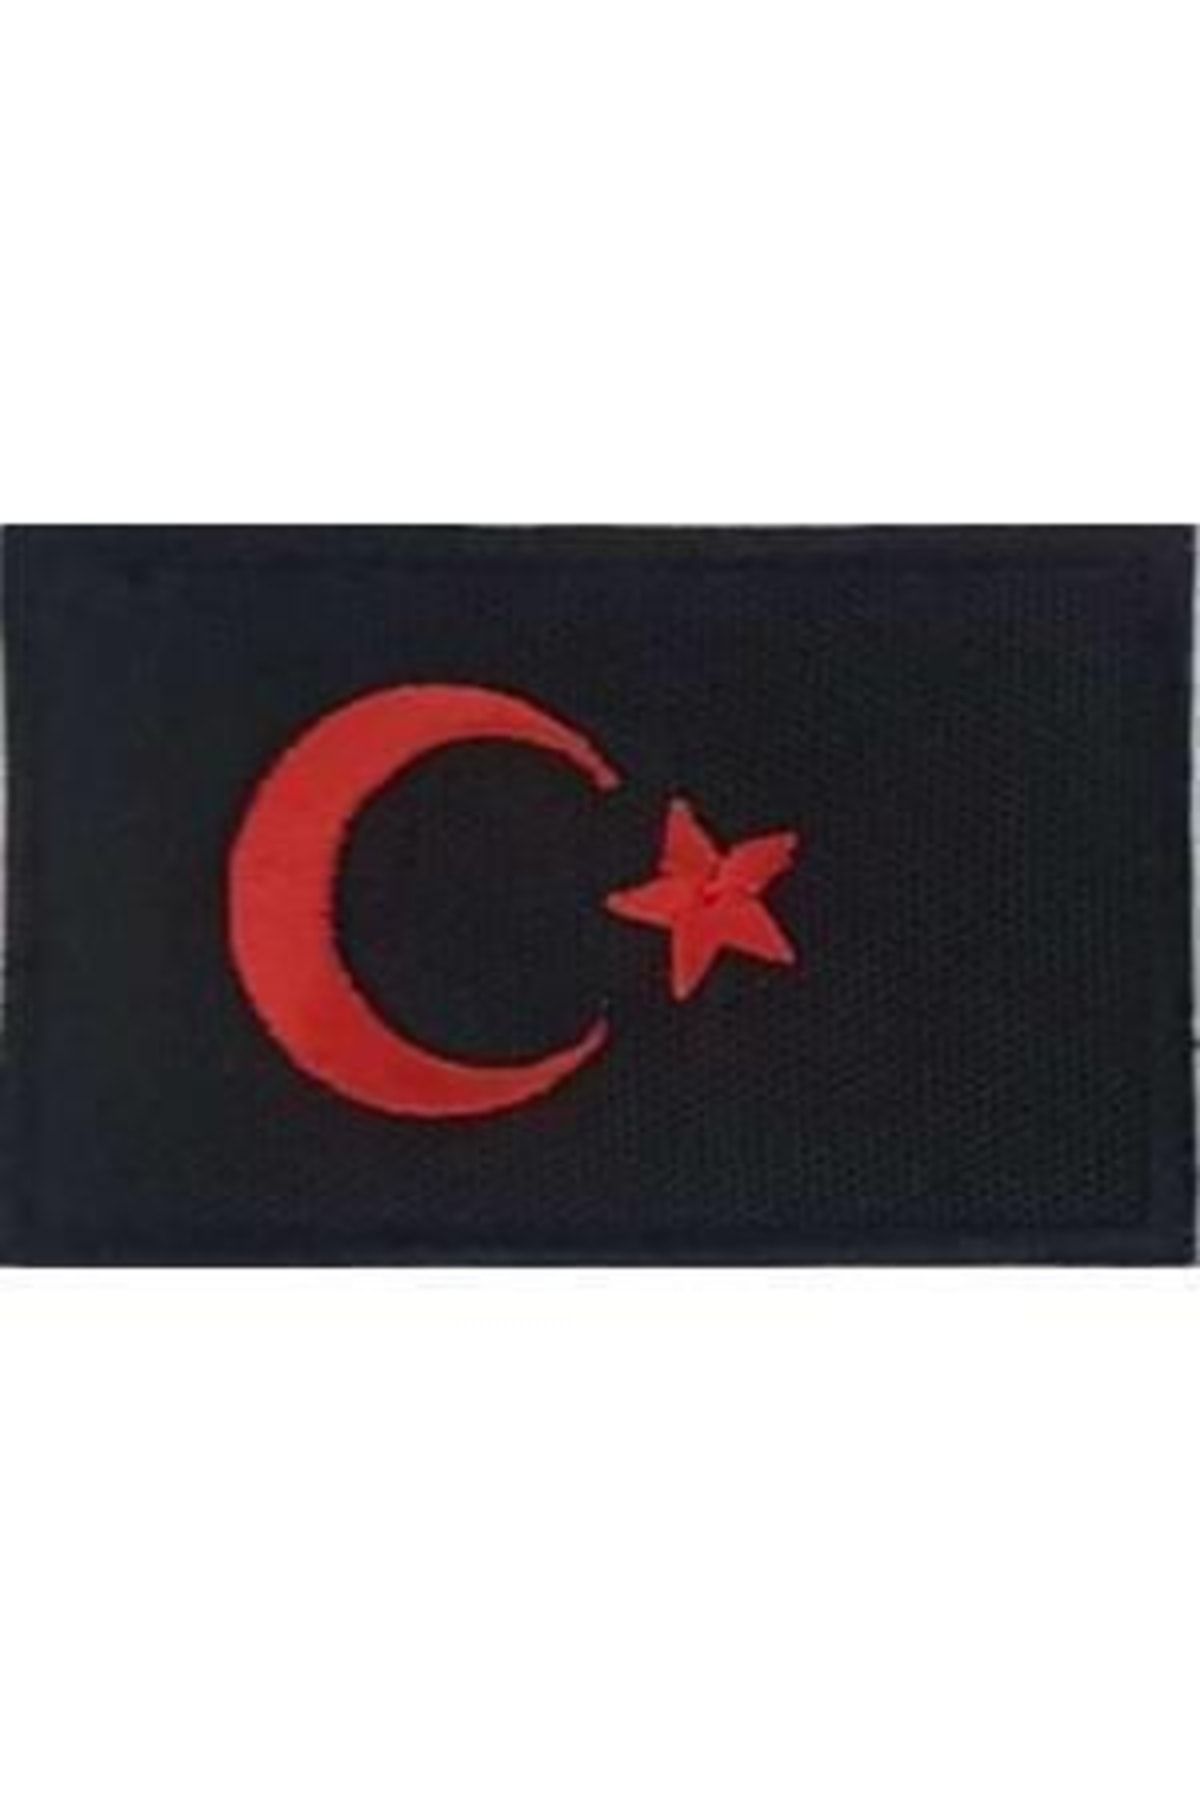 Sim Nakış Cırt Bantlı Turkey Türkiye Türk Bayrakları Nakış Işleme Arma Patch Peç 5x8 Cm Siyah Kırmızı